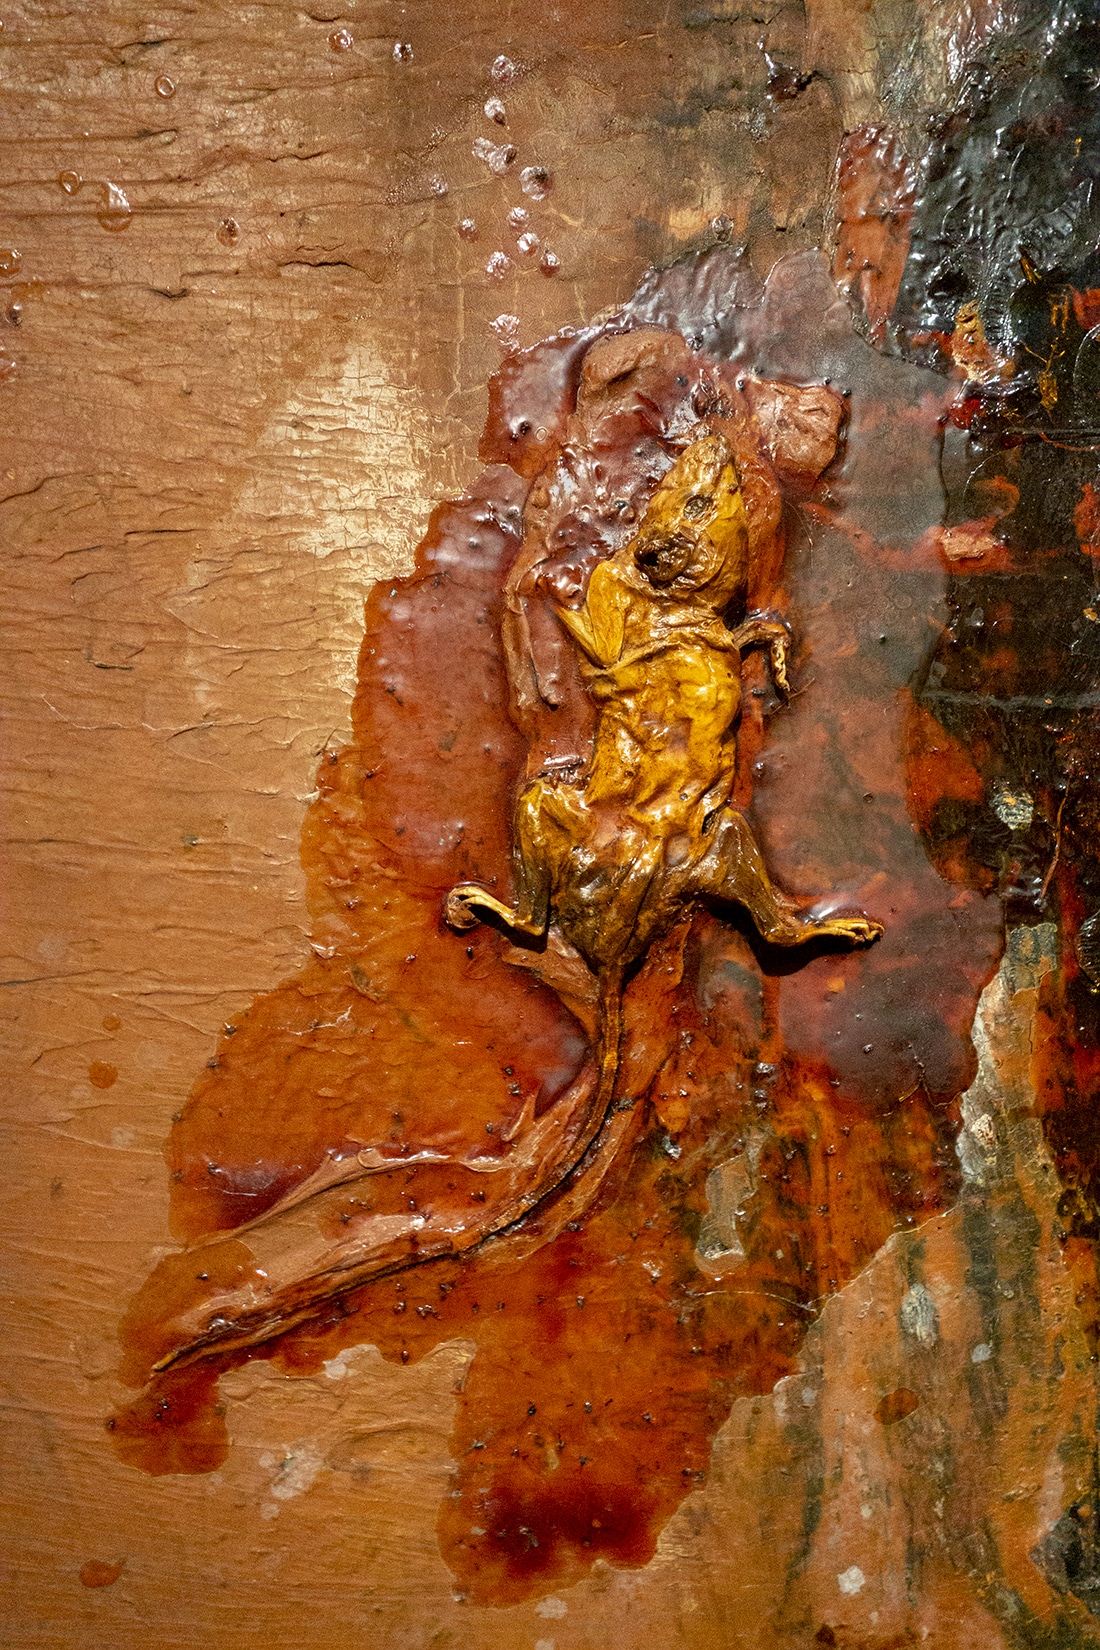 Al millennia maken mensen er kunst mee: dode dieren – zoals deze rat van David Lynch